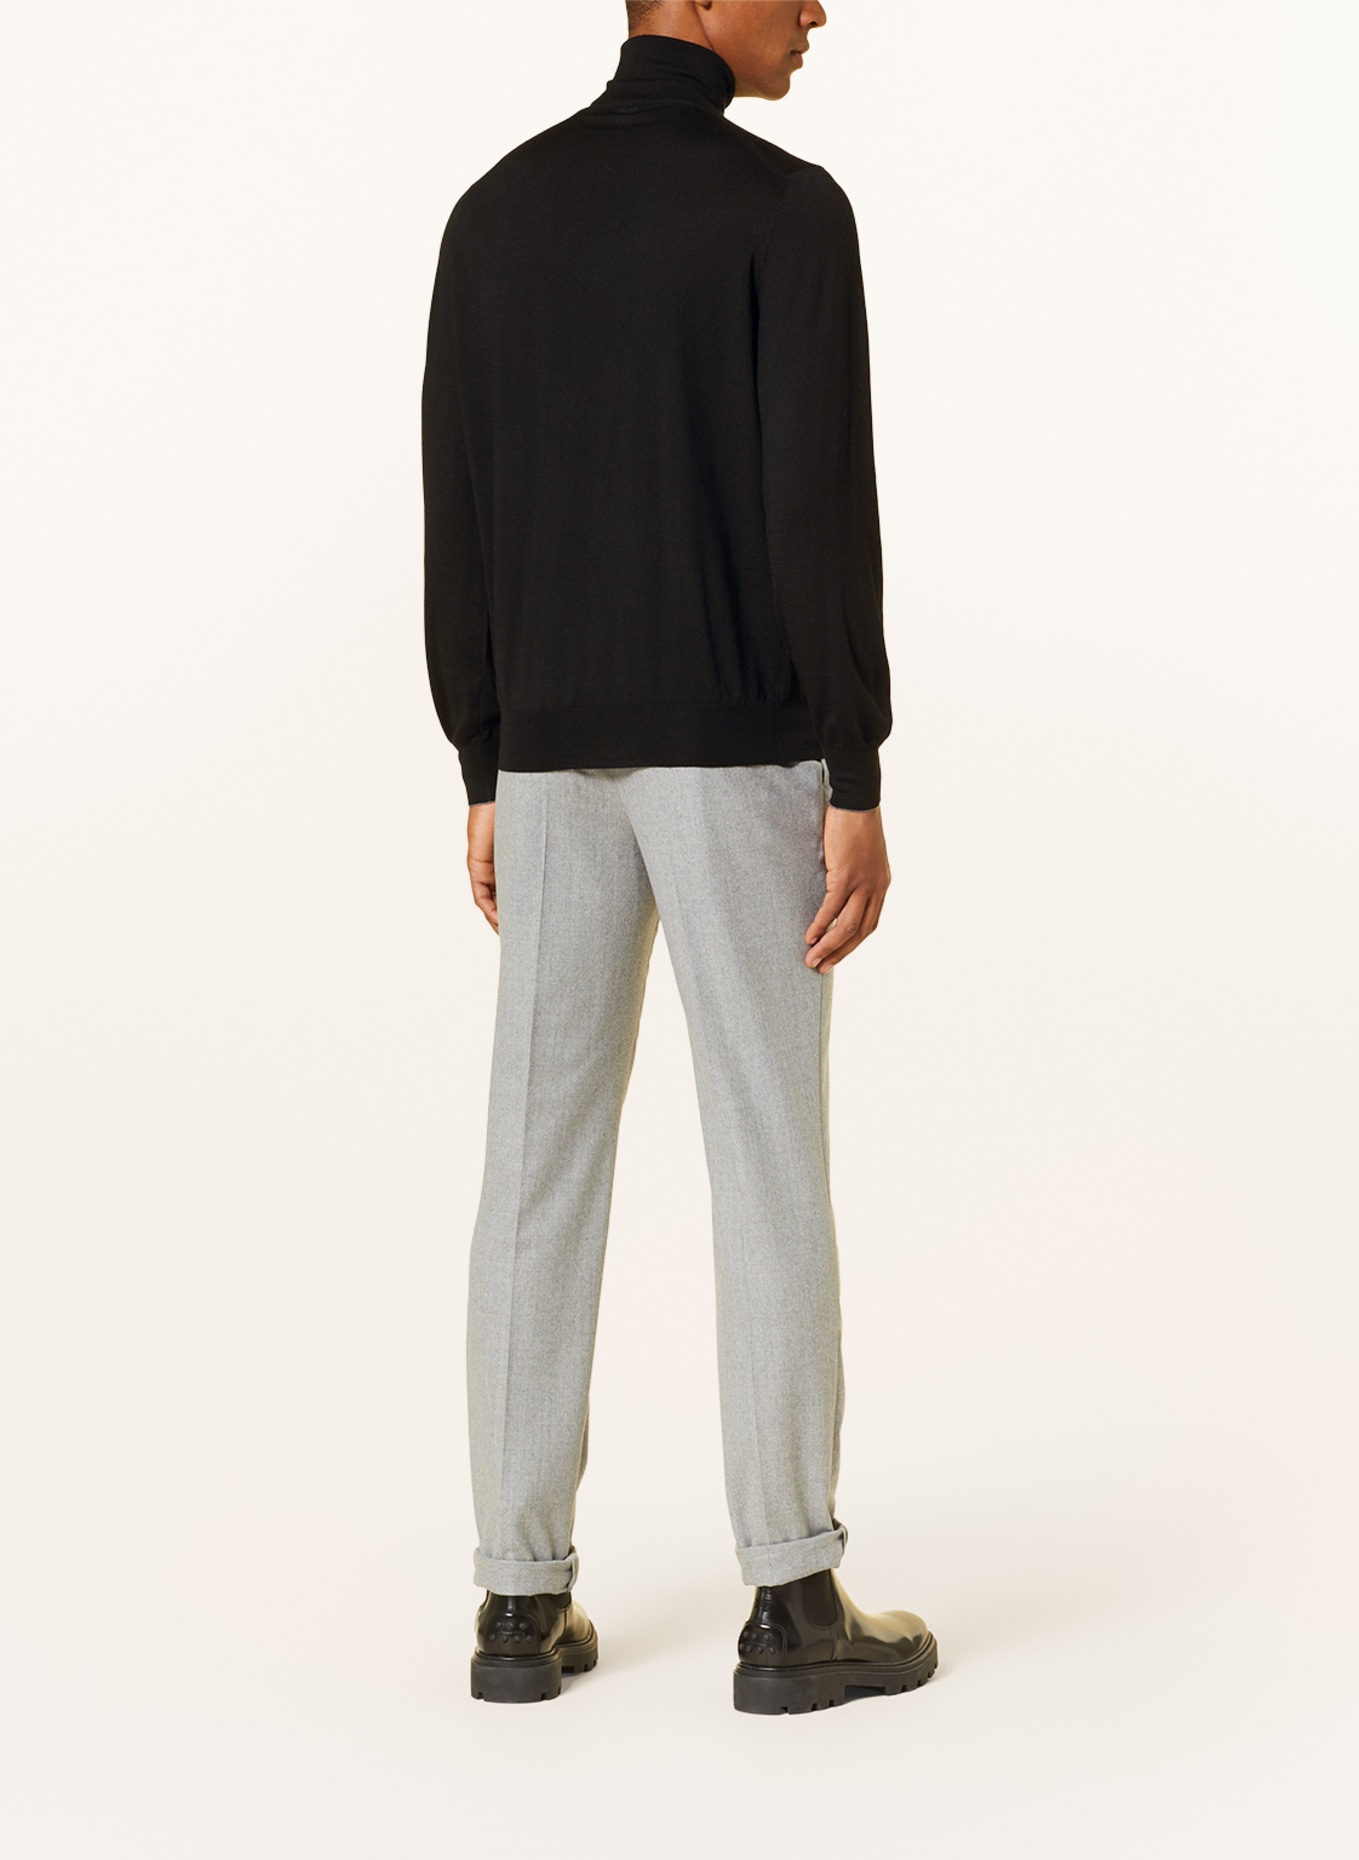 BRUNELLO CUCINELLI Turtleneck sweater, Color: BLACK (Image 3)